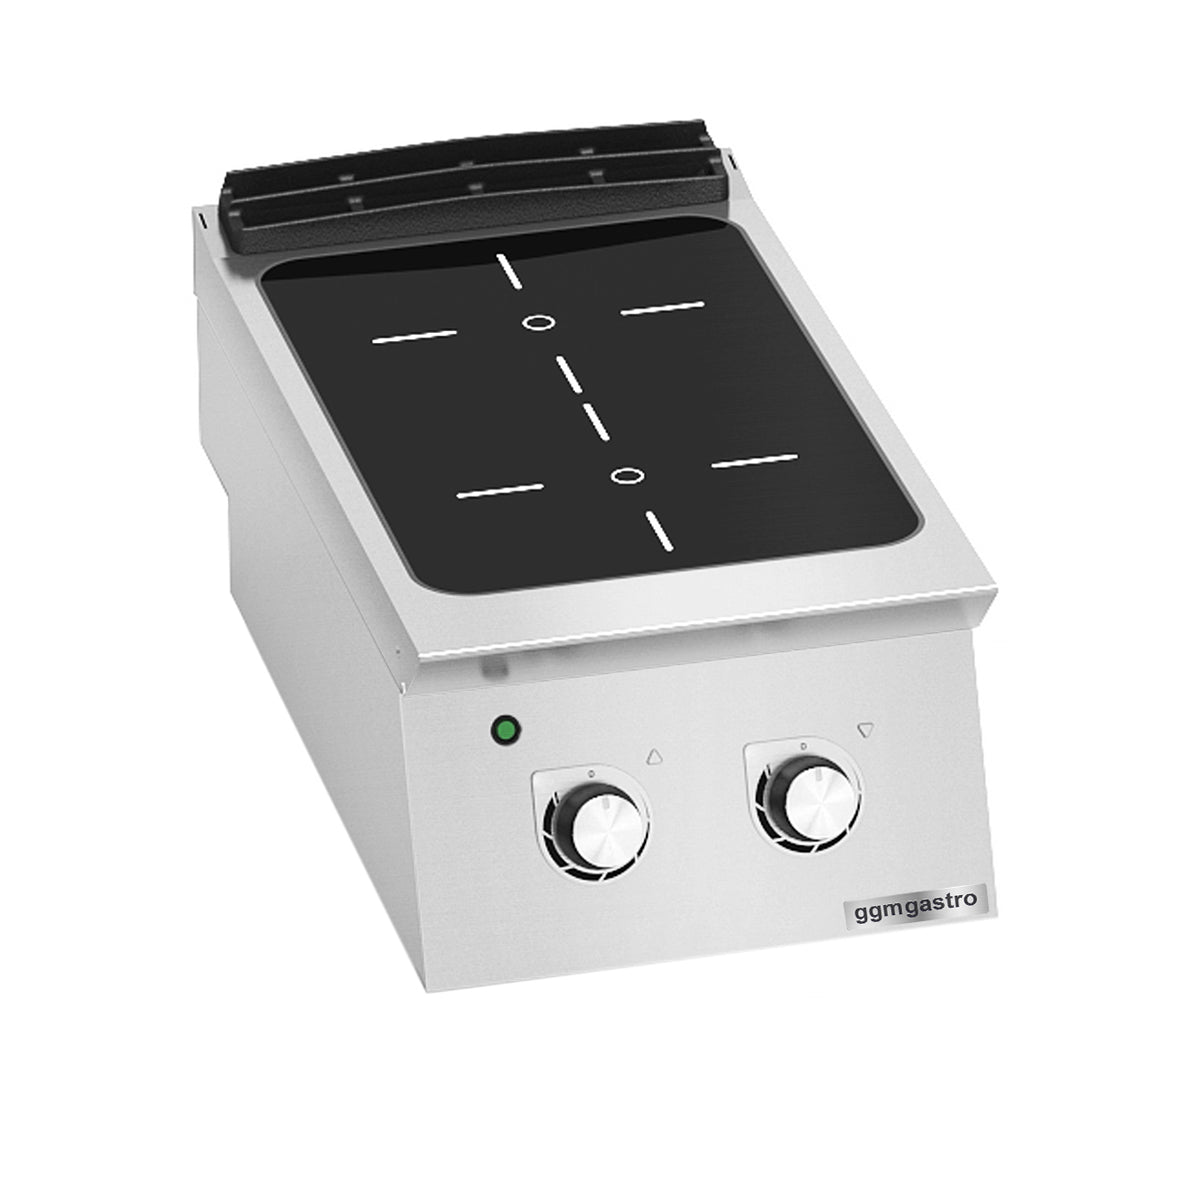 Infrarød ovn - med 2 kogeplader (6,4 kW)